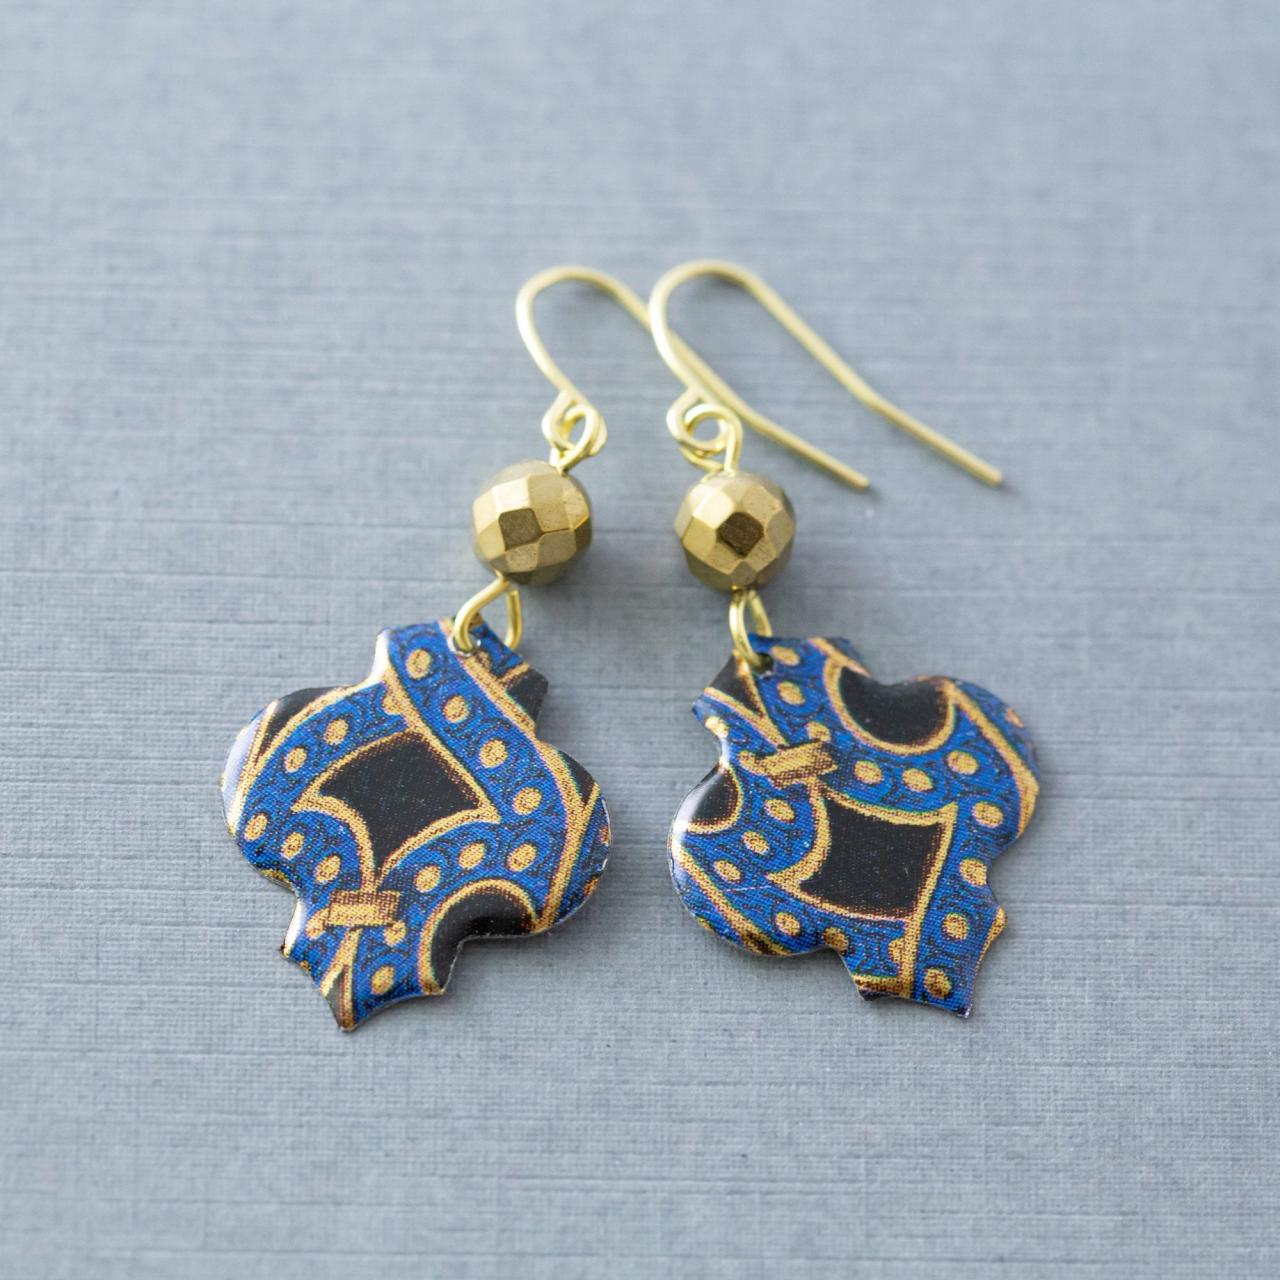 Moroccan Earrings, Boho Earrings, Quatrefoil Earrings, Blue, Gold, Black Tin Earrings, Bohemian Earrings, Tin Jewelry, Ethnic Jewelry